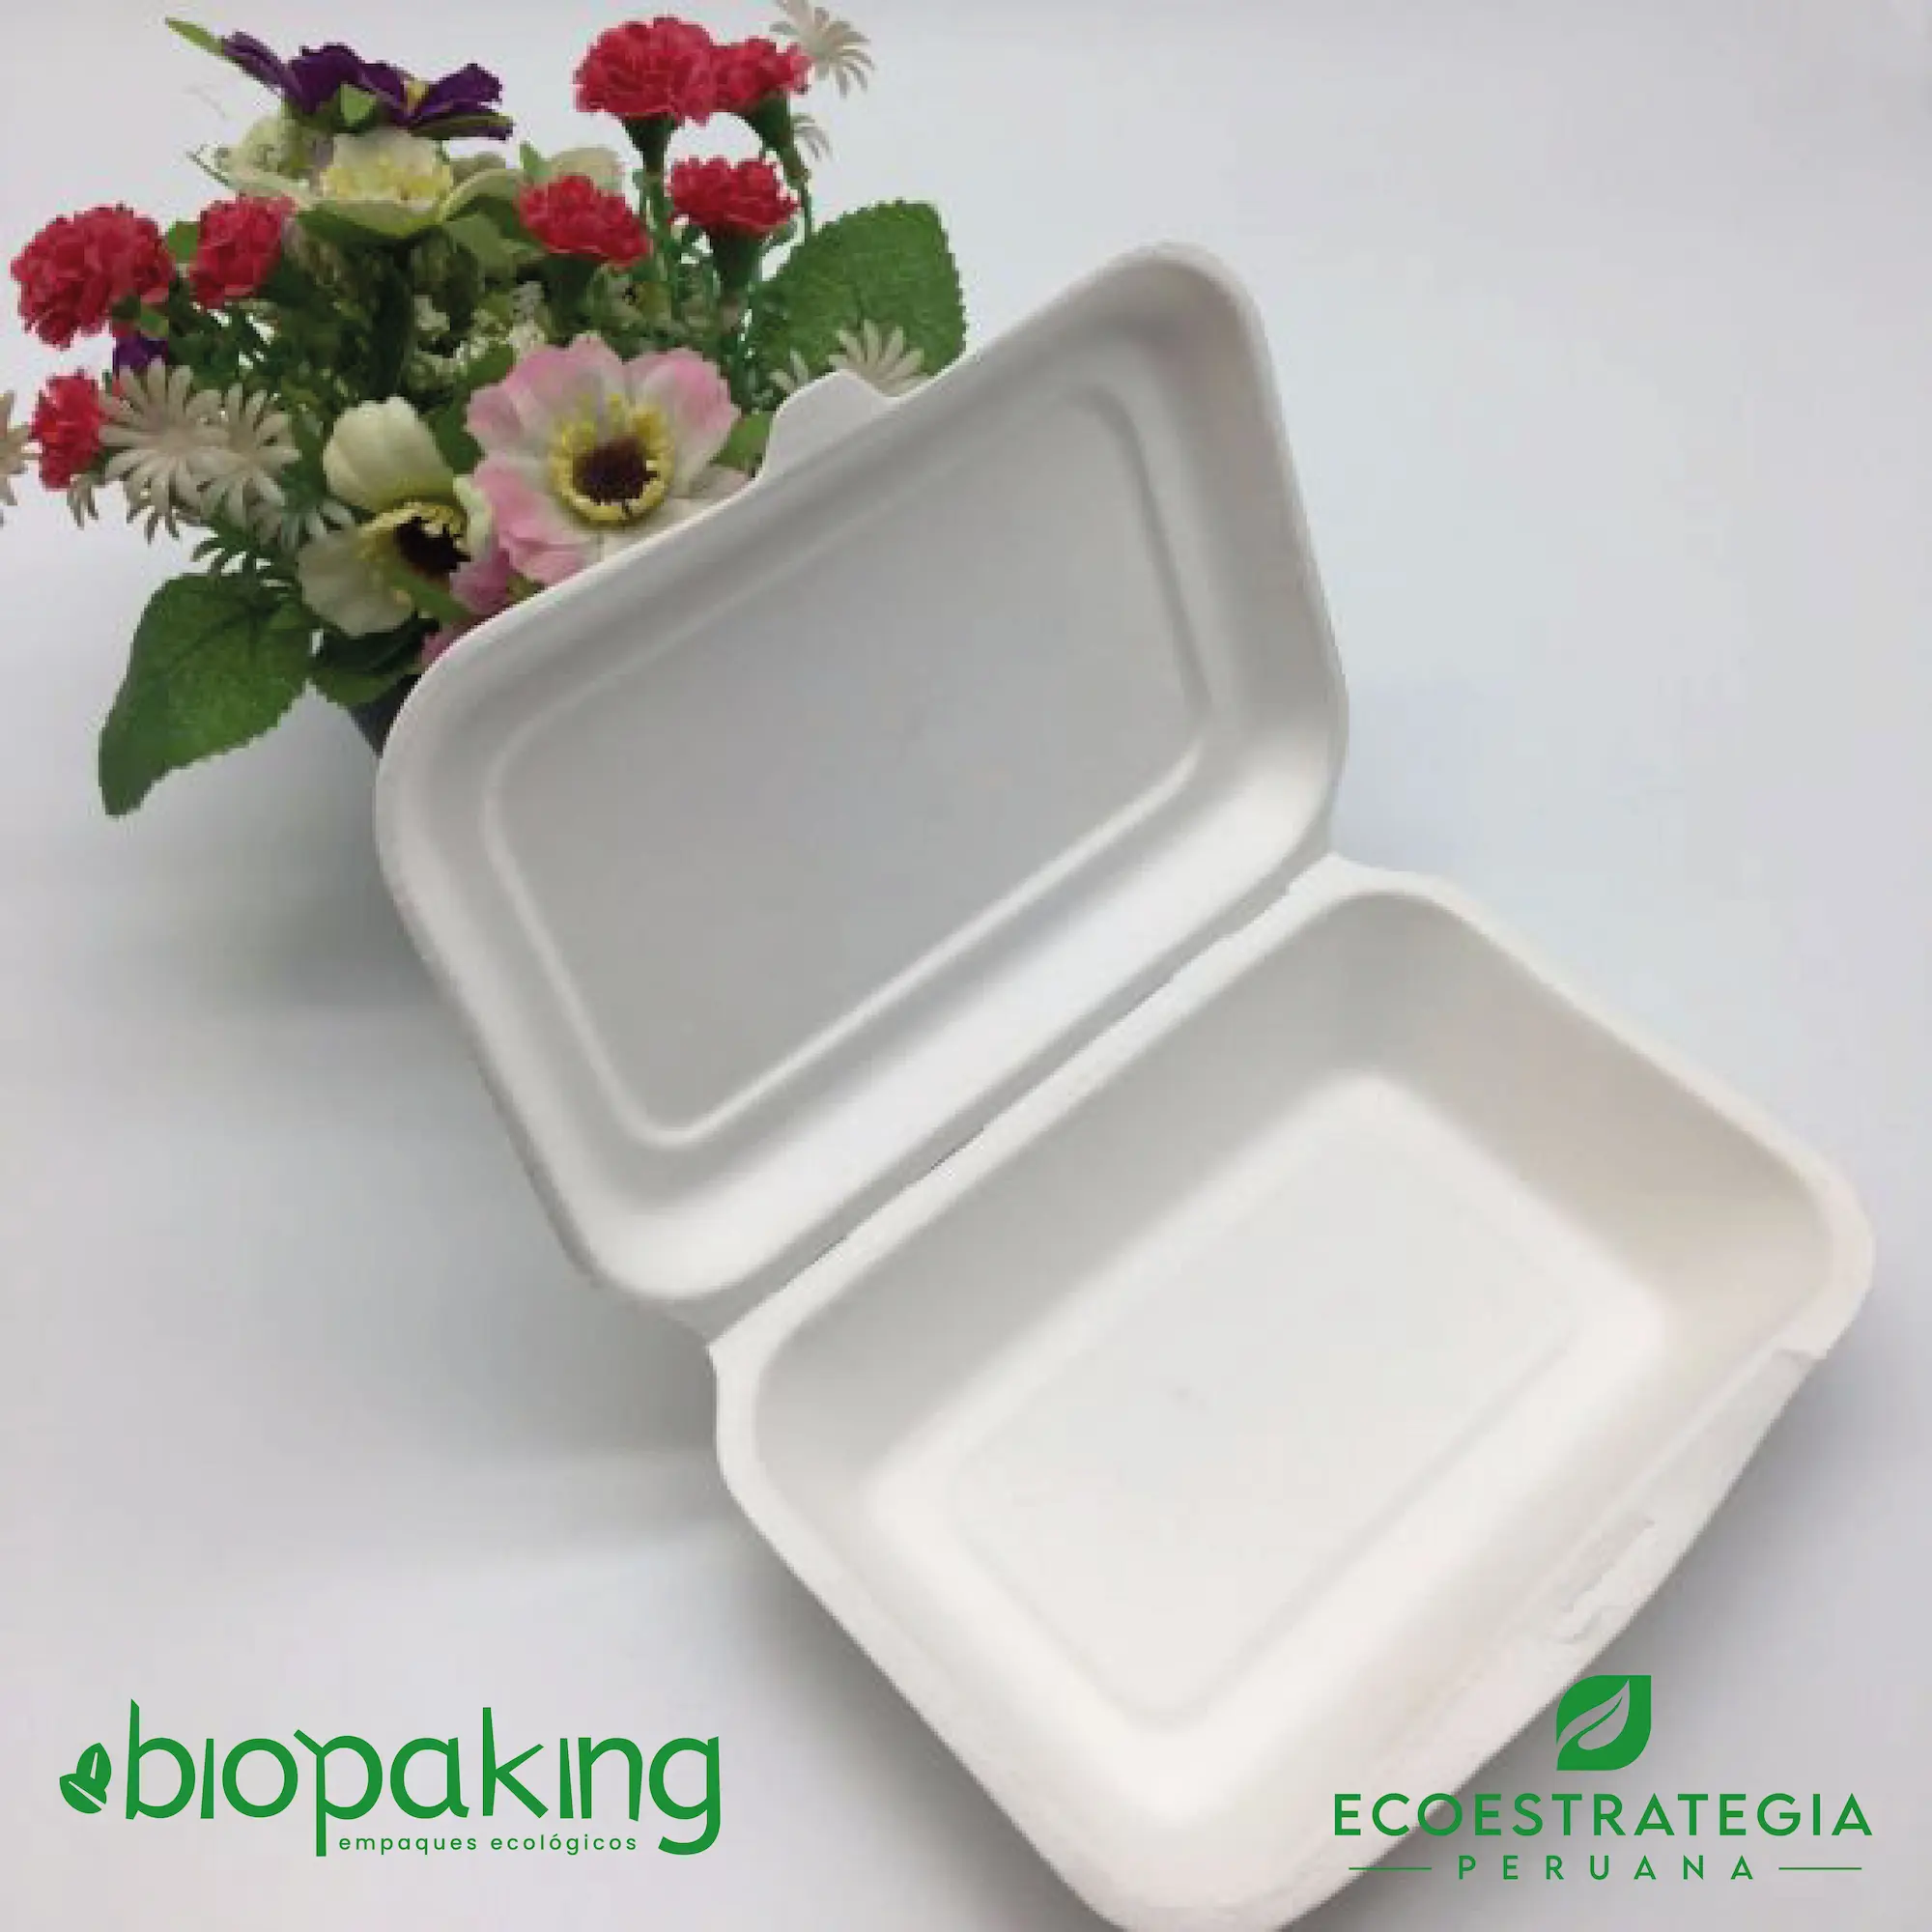 El envase biodegradable CT7 tiene una capacidad de 550ml. Táper biodegradable a base del bagazo de fibra de caña de azúcar, empaques de gramaje ideal para ensaladas y comidas